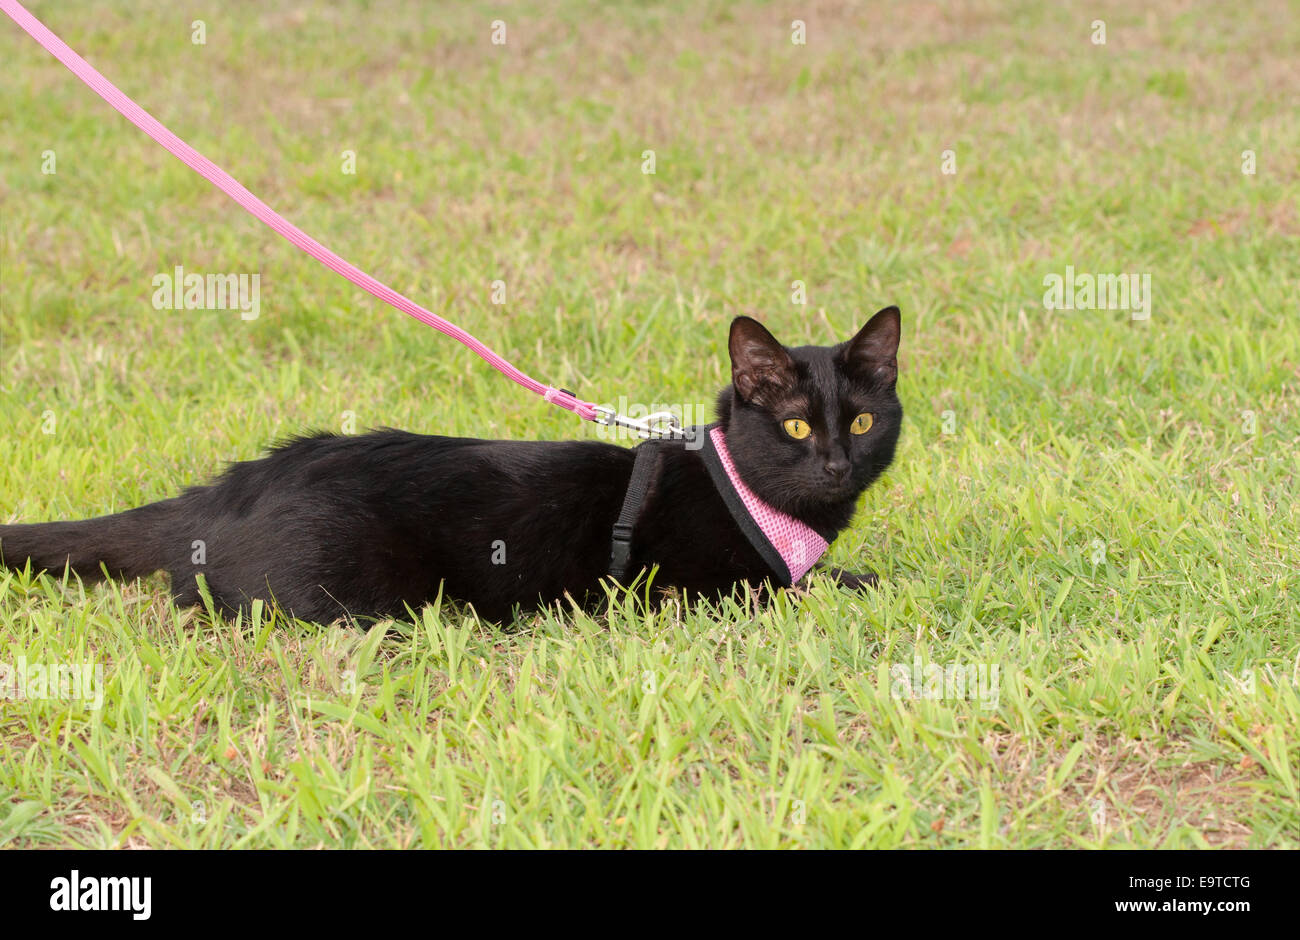 Chat noir porte un harnais à l'extérieur dans l'herbe Banque D'Images